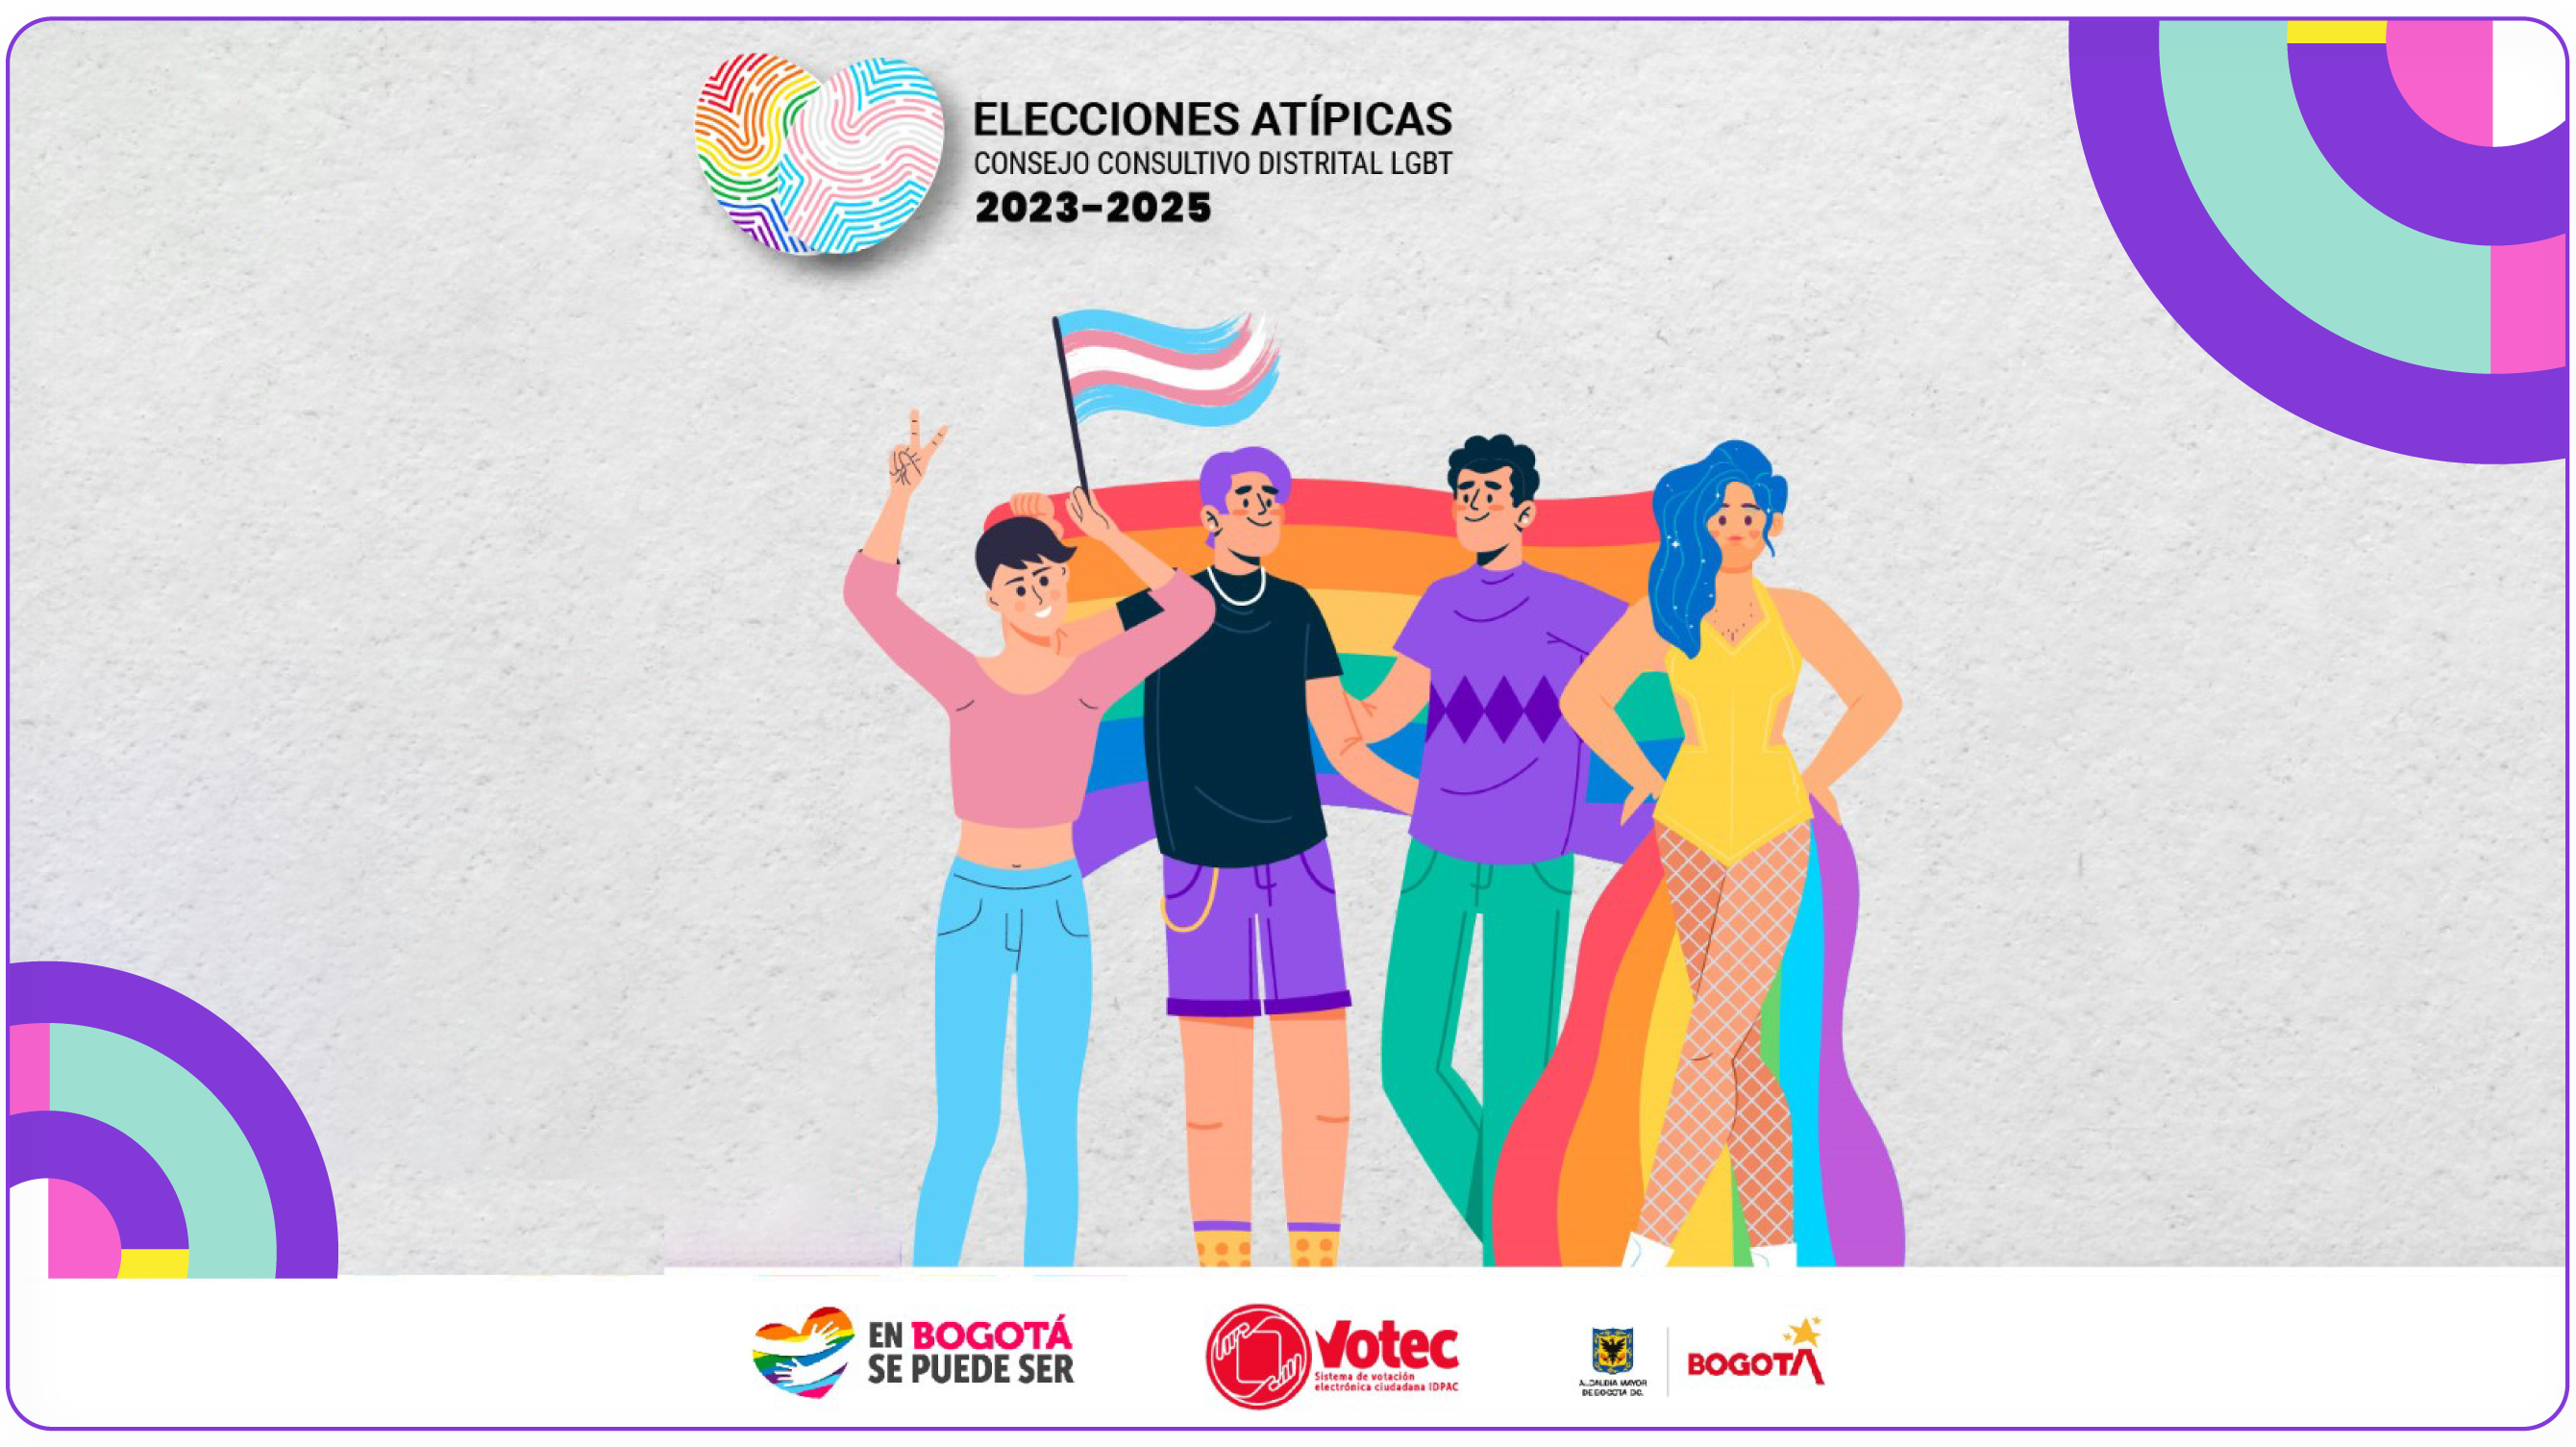 Elecciones  Atípicas del Consejo Consultivo Distrital LGBT 2023-2025